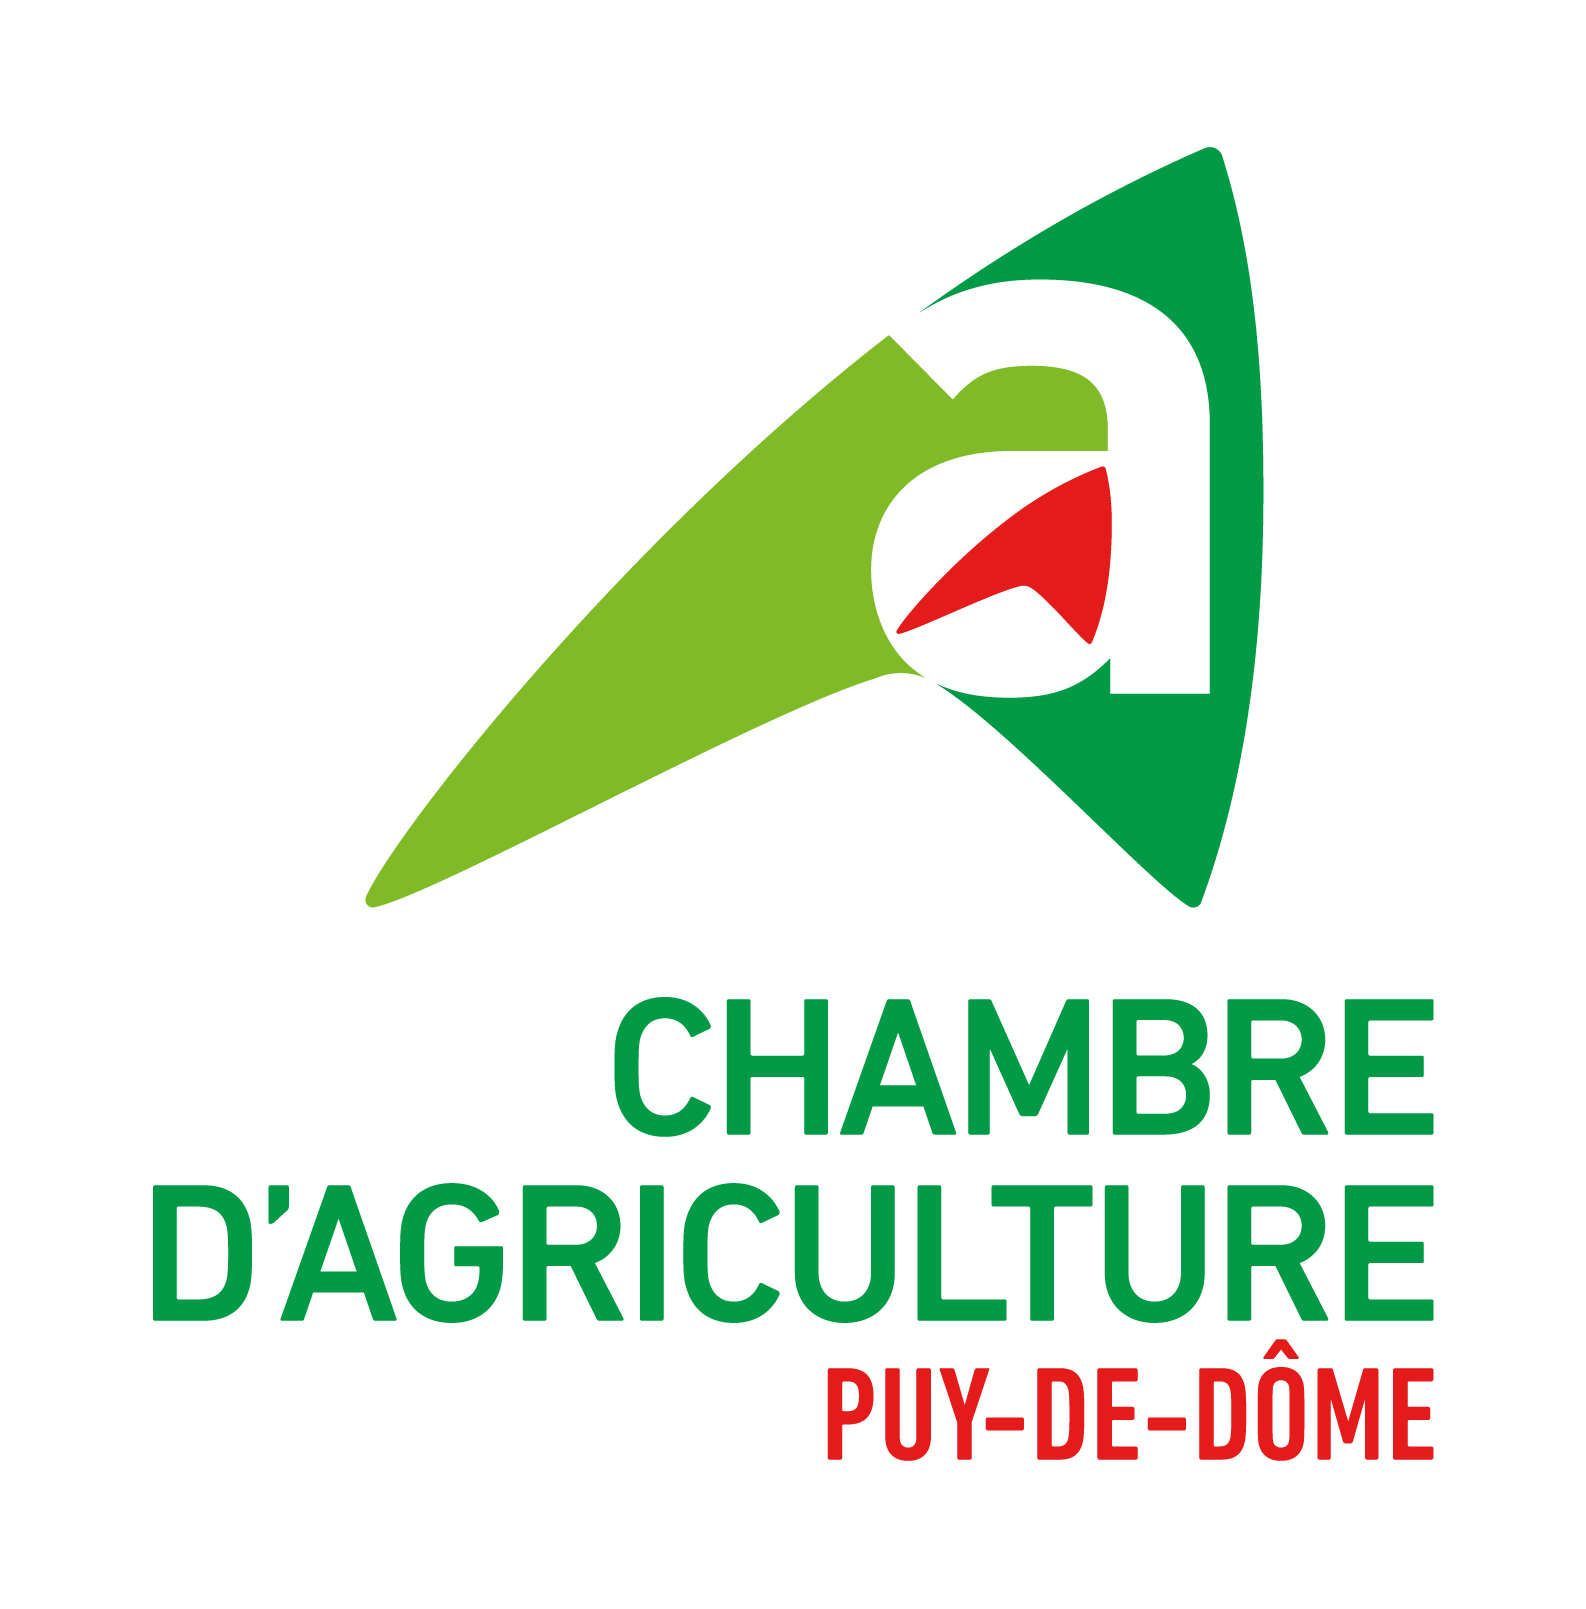 Chambre d'agriculture du Puy-de-Dôme, retour à la page d'accueil